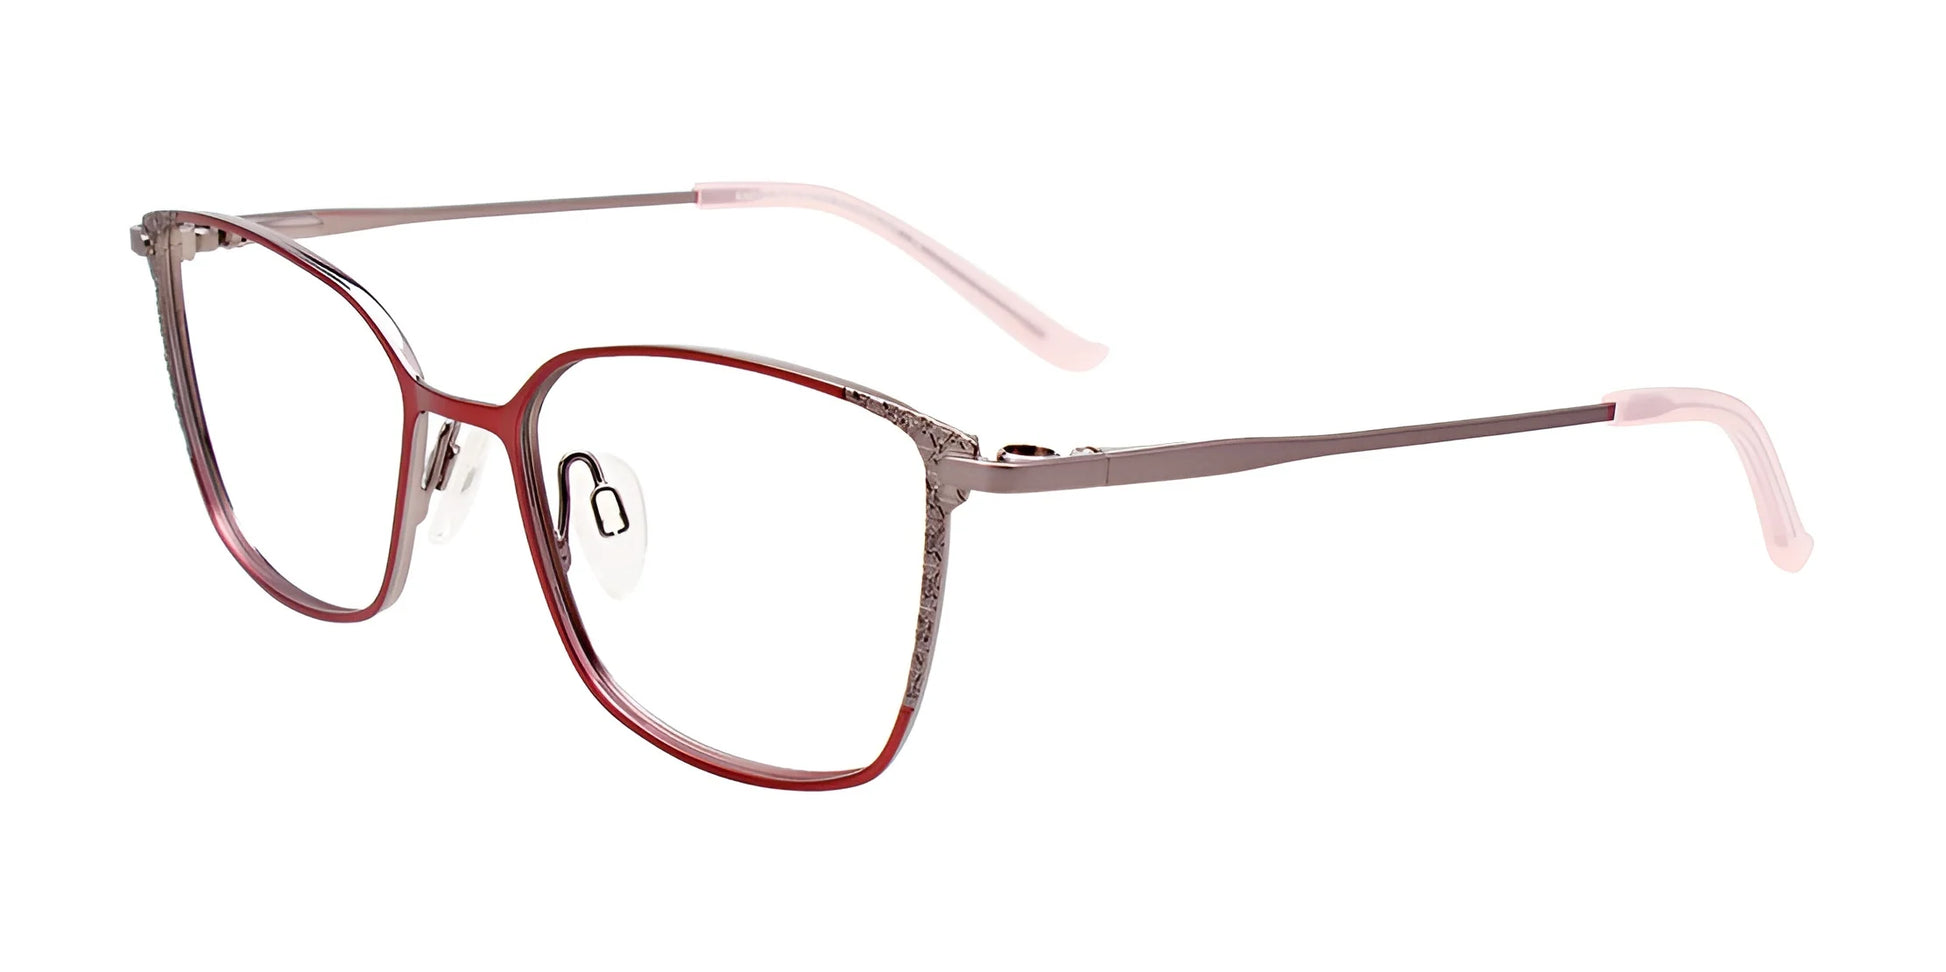 EasyClip EC604 Eyeglasses Pink & Steel